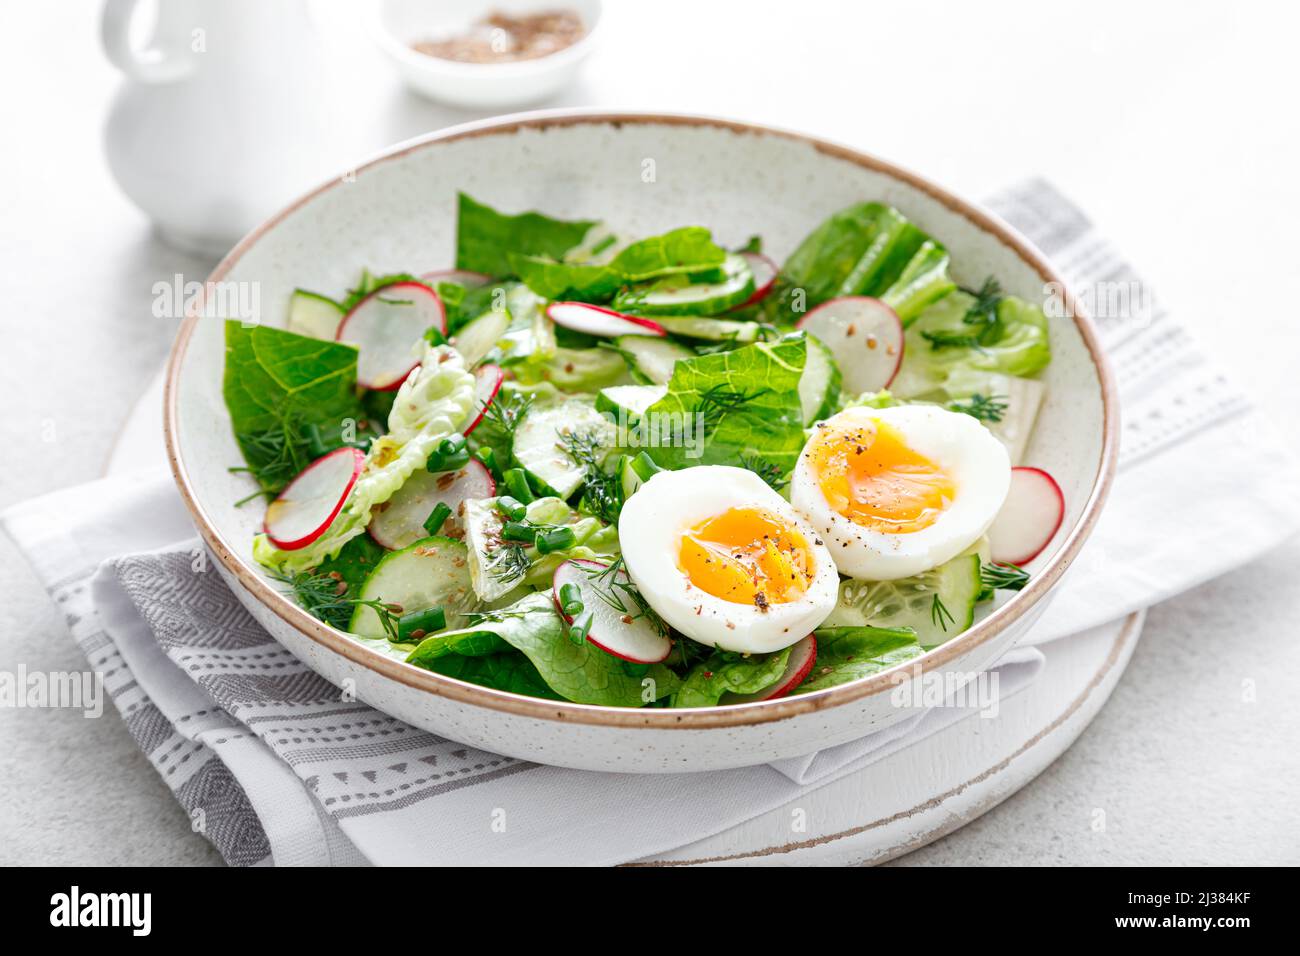 Ensalada con rábano, pepino, lechuga romana y huevo cocido suave Foto de stock